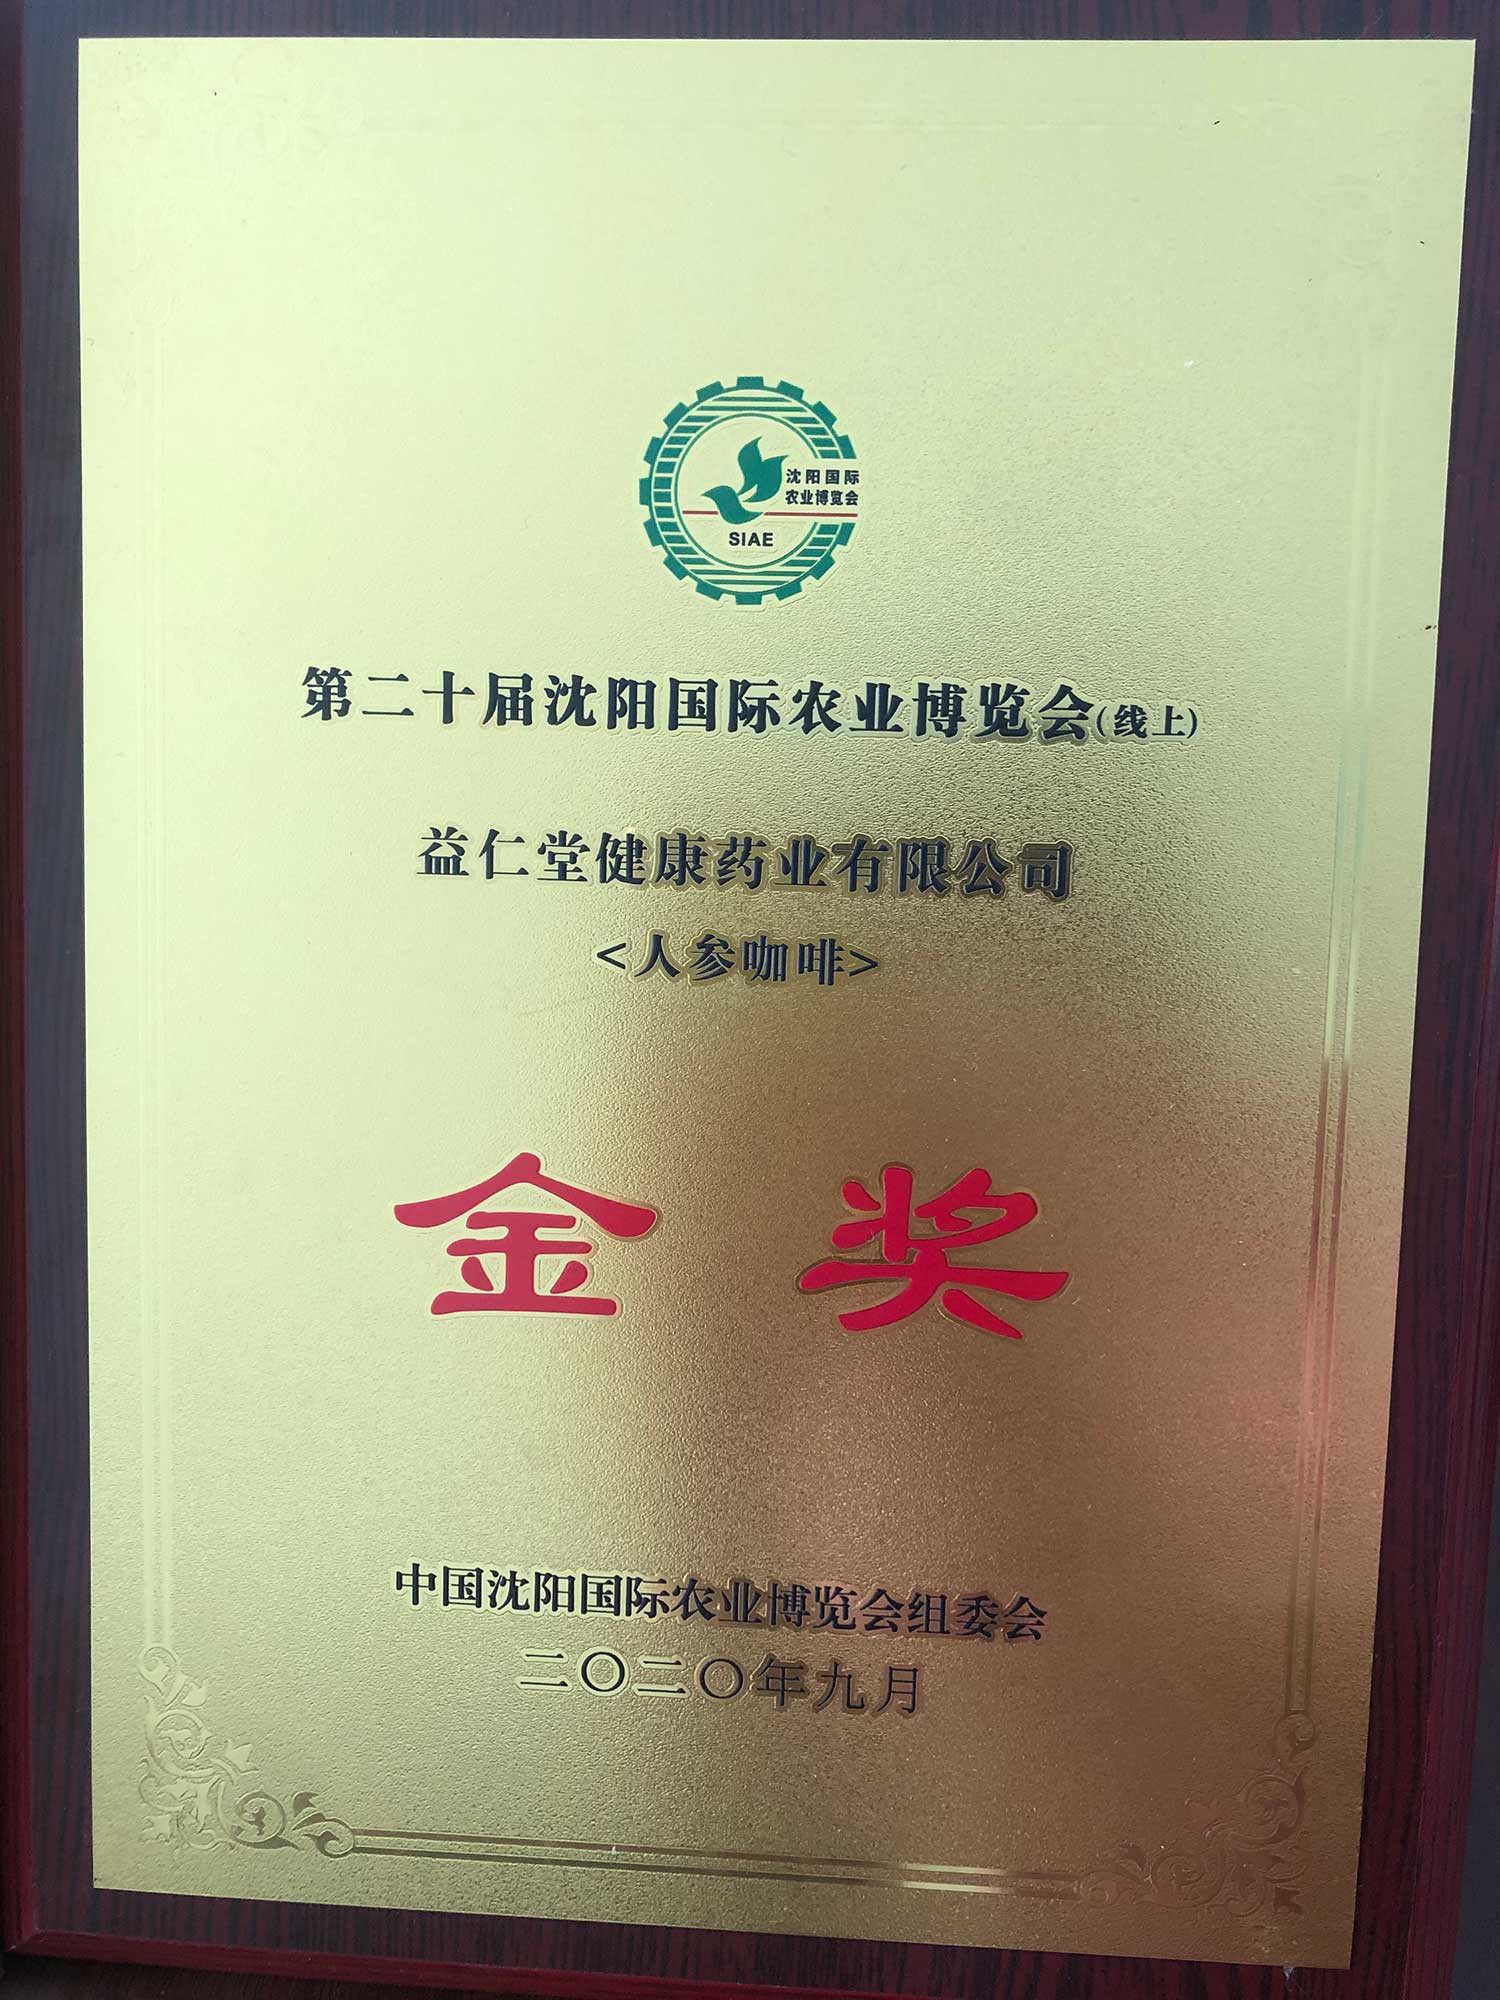 野山籽海牌人参咖啡在2020年中国沈阳国际农业博览会上荣获优质农产品金奖